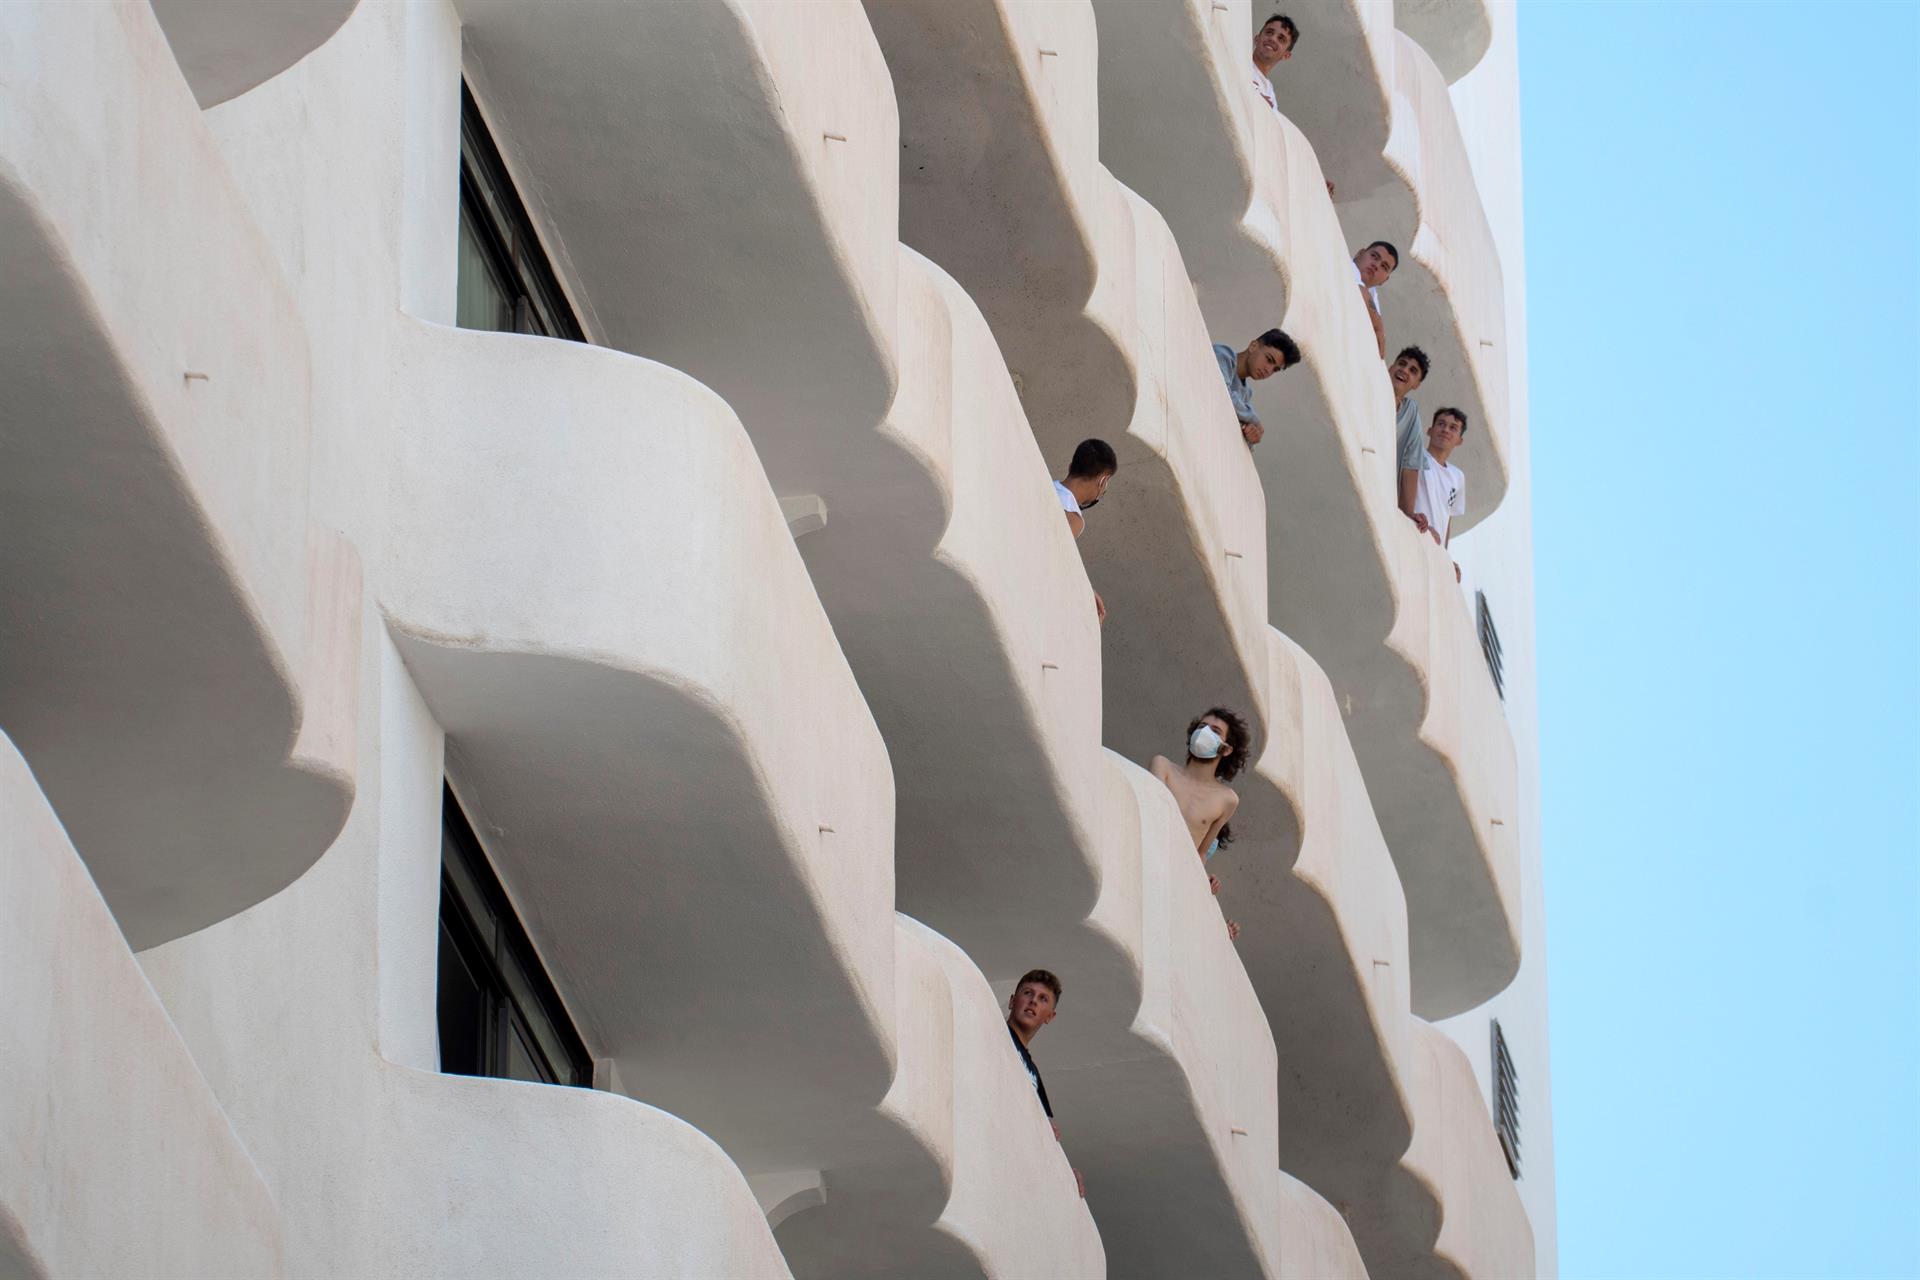 Estudiantes asomados a los balcones del hotel en el que permanecen en cuarentena en Mallorca tras el megabrote vinculado a los viajes de fin de curso.